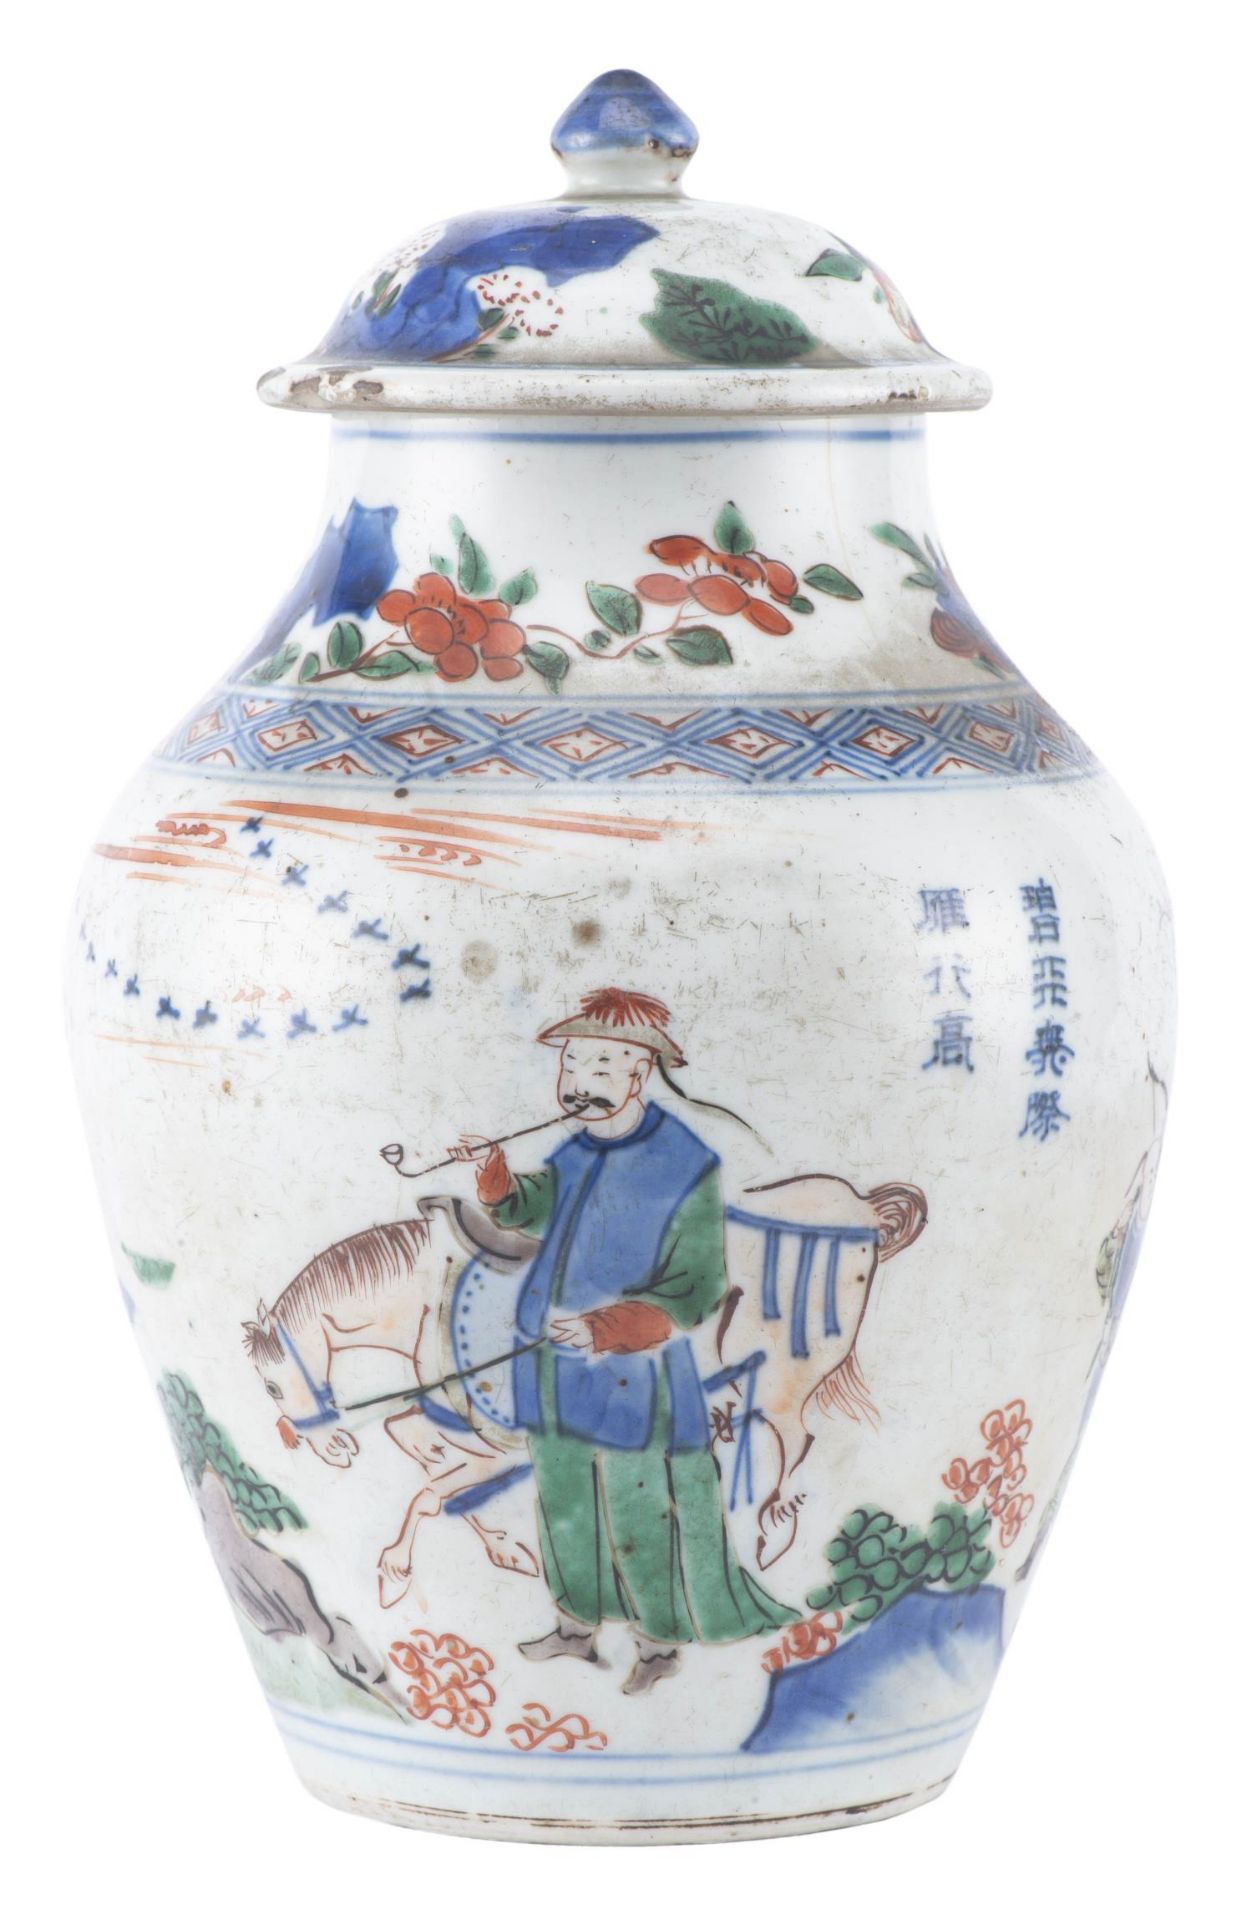 Jarre en porcelaine de Chine à décor en Wucai, Epoque Qing, Shunzhi/début Kangxi circa 1650-65